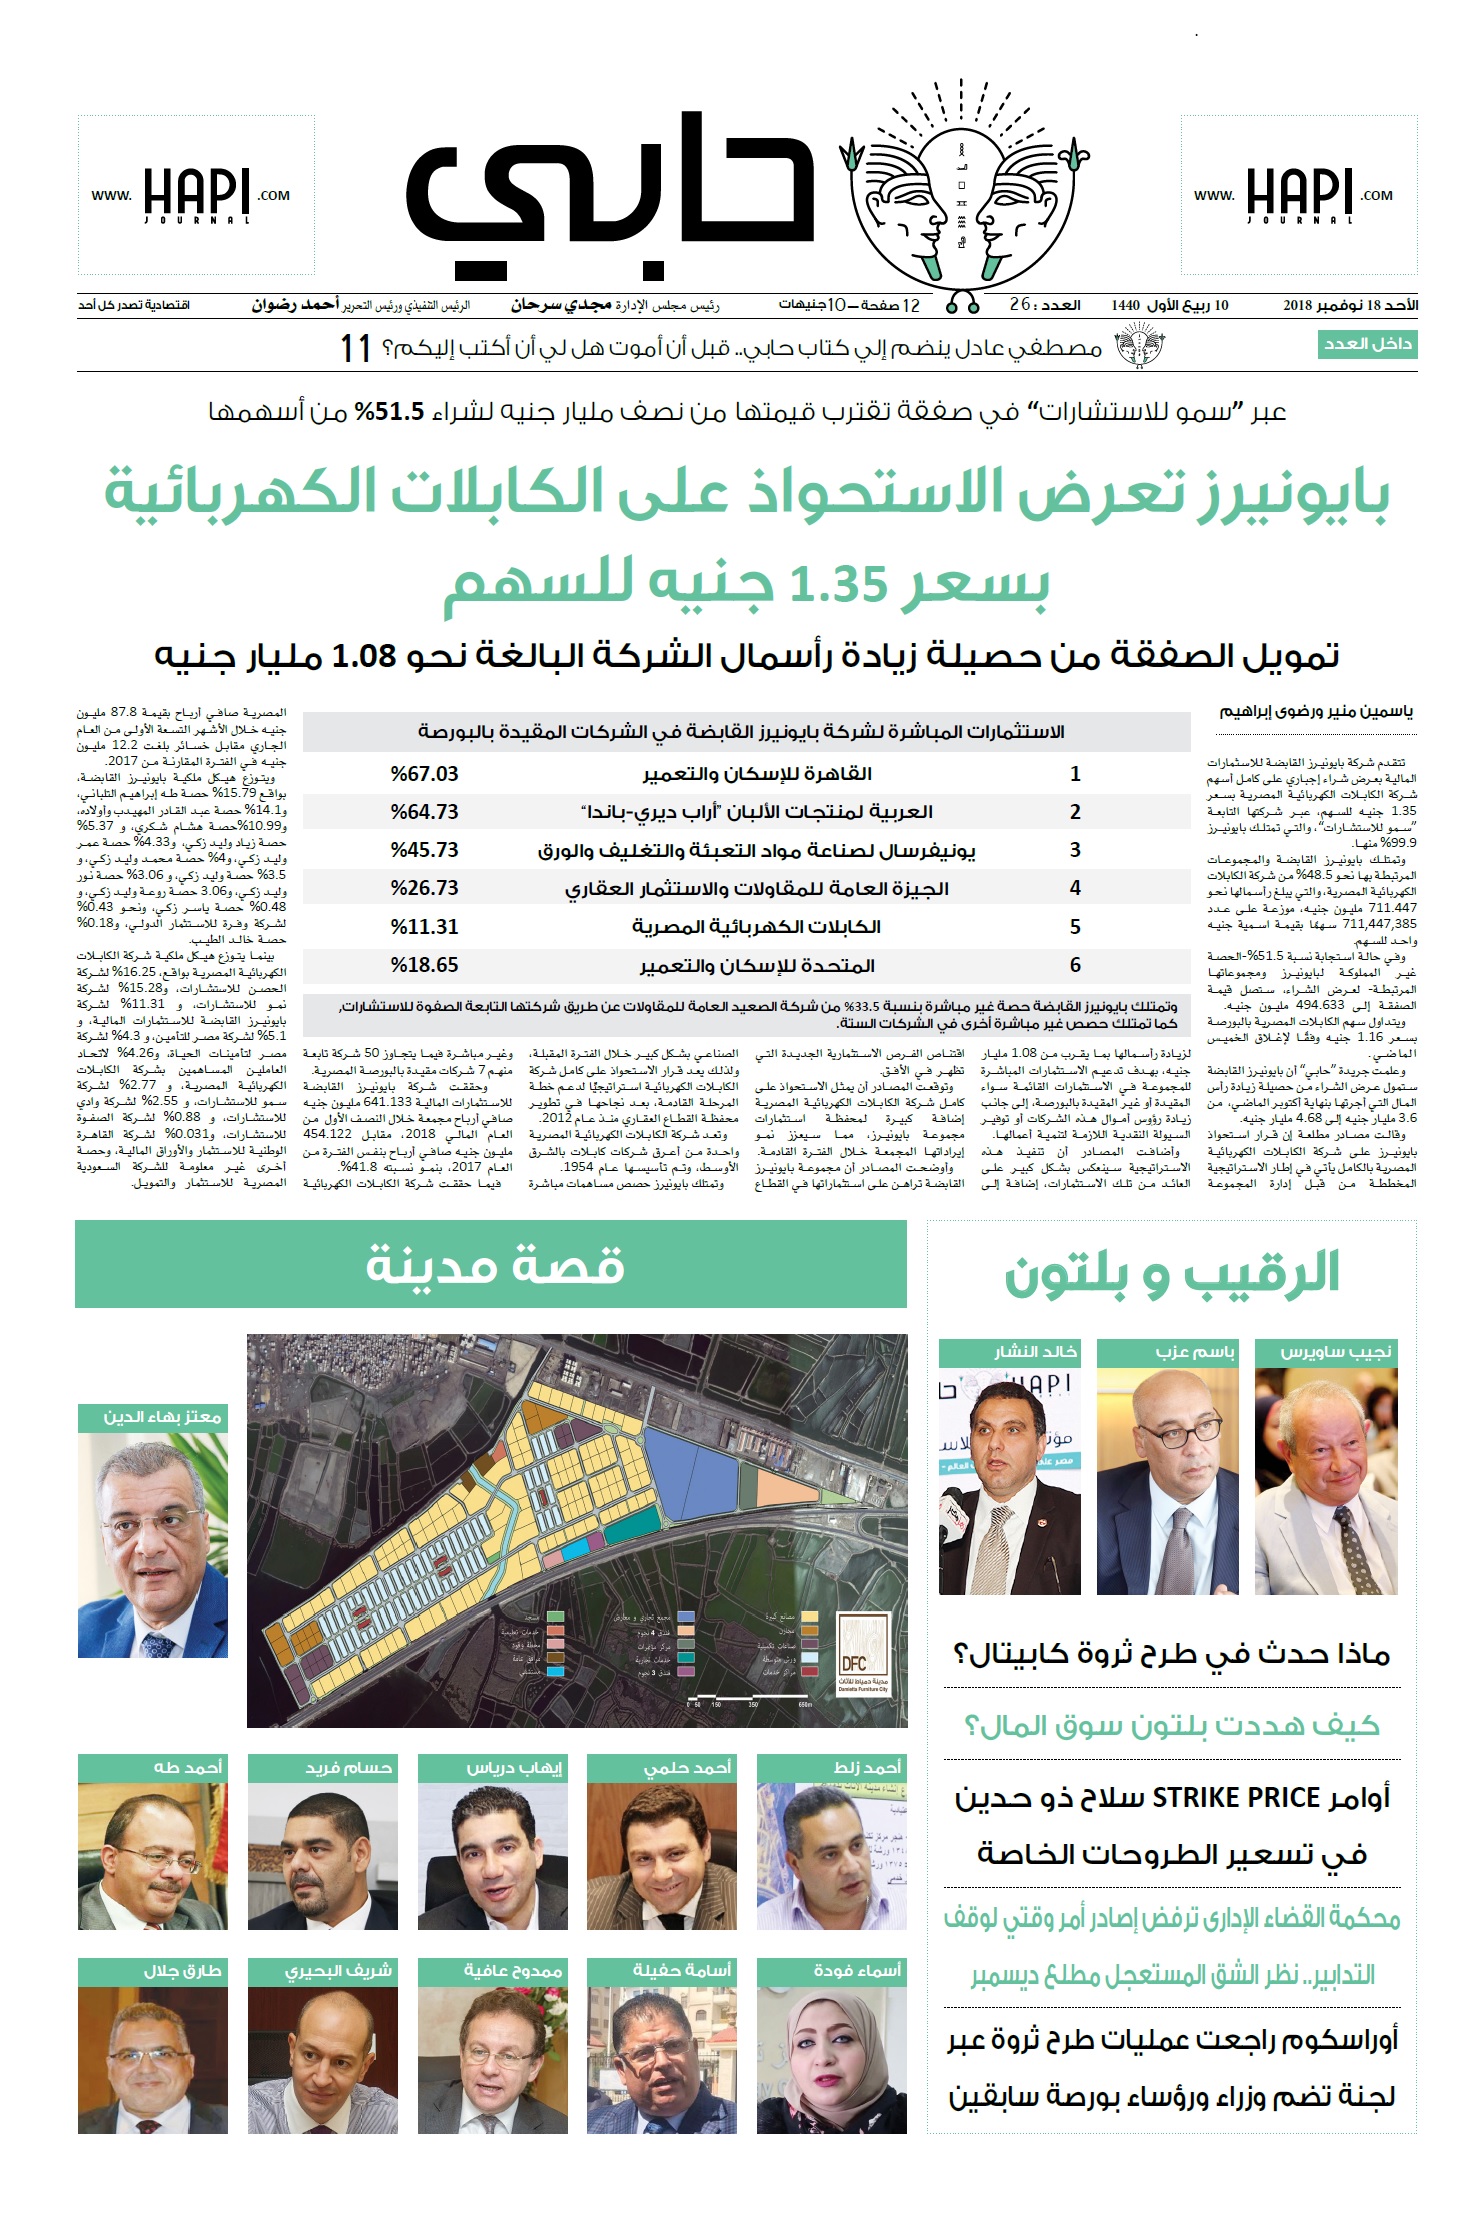 الصفحة الأولي من جريدة حابي